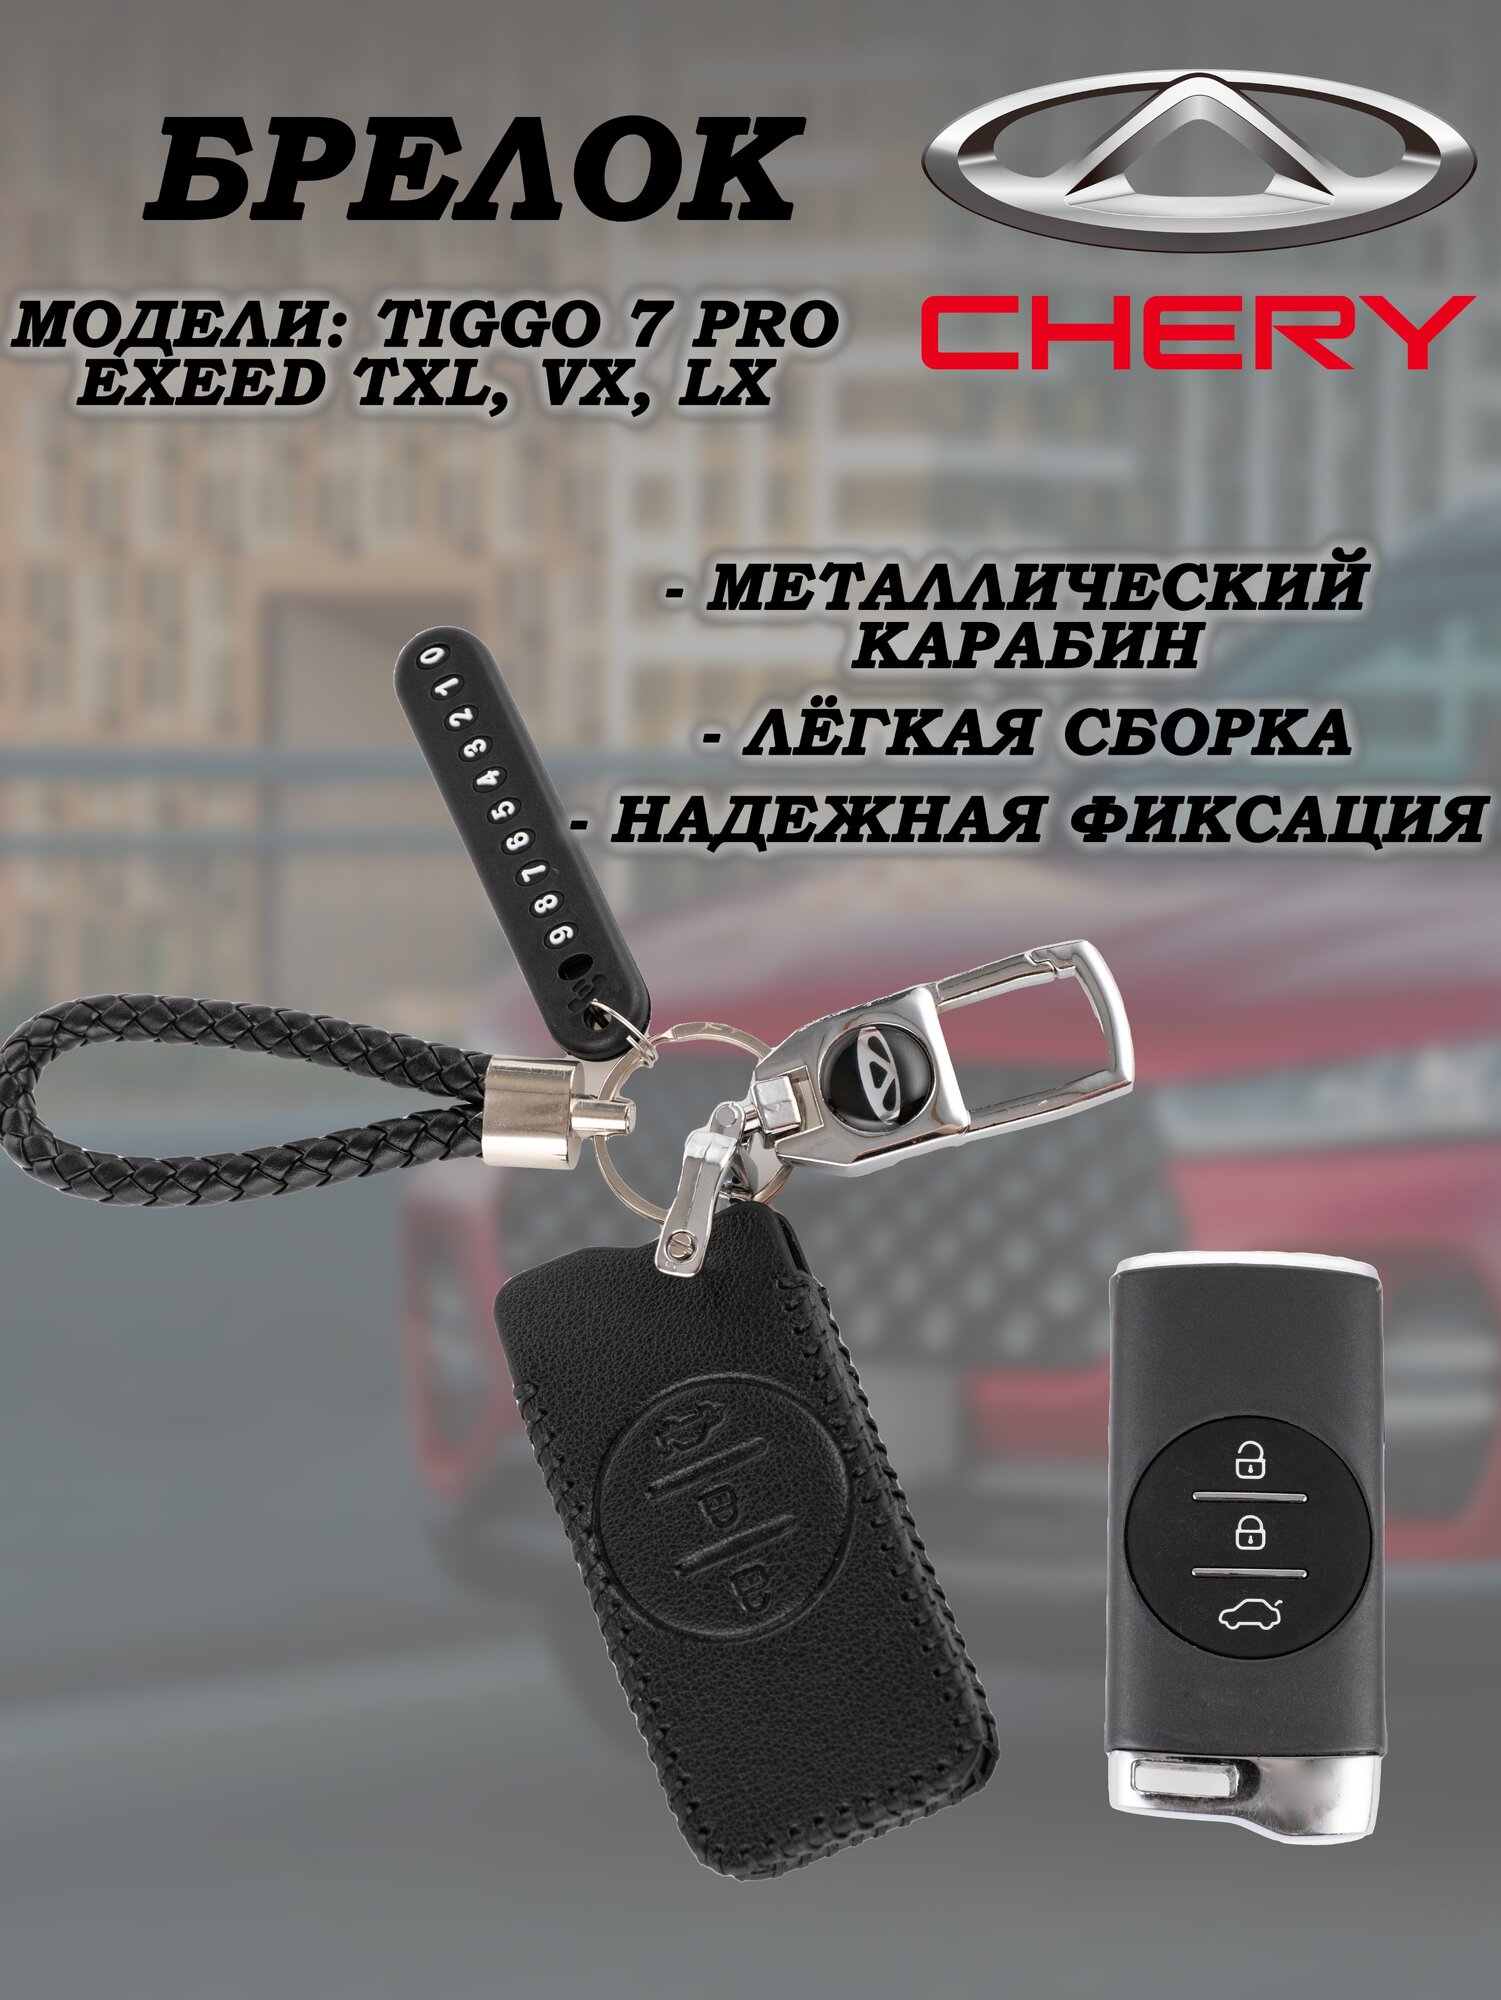 Брелок для ключей Chery Tiggo Exeed TXL VX LX черри тиго 7 про